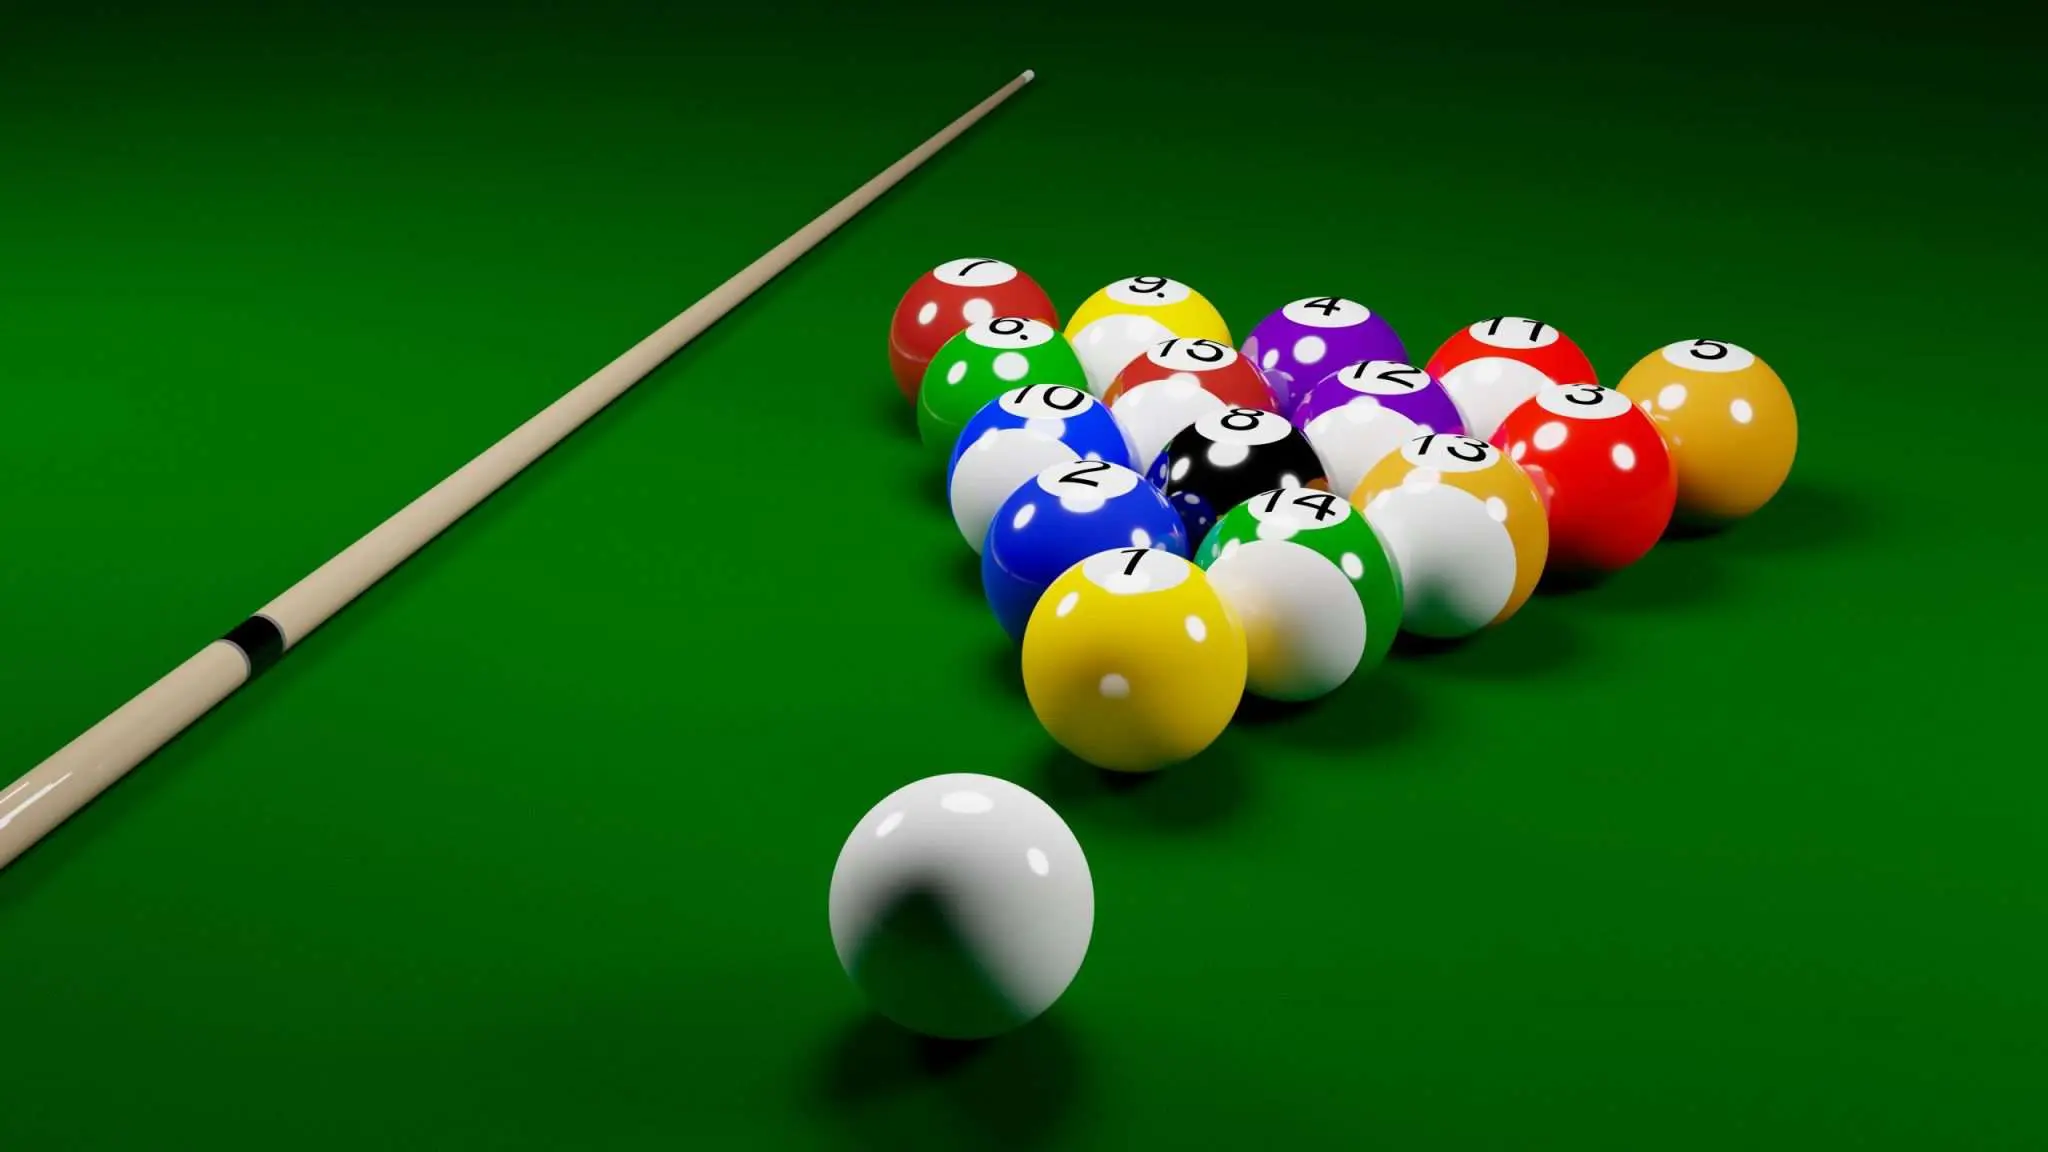 Tải 8 Ball Pool - Game Bida đỉnh cao trên PC, Android, iOS